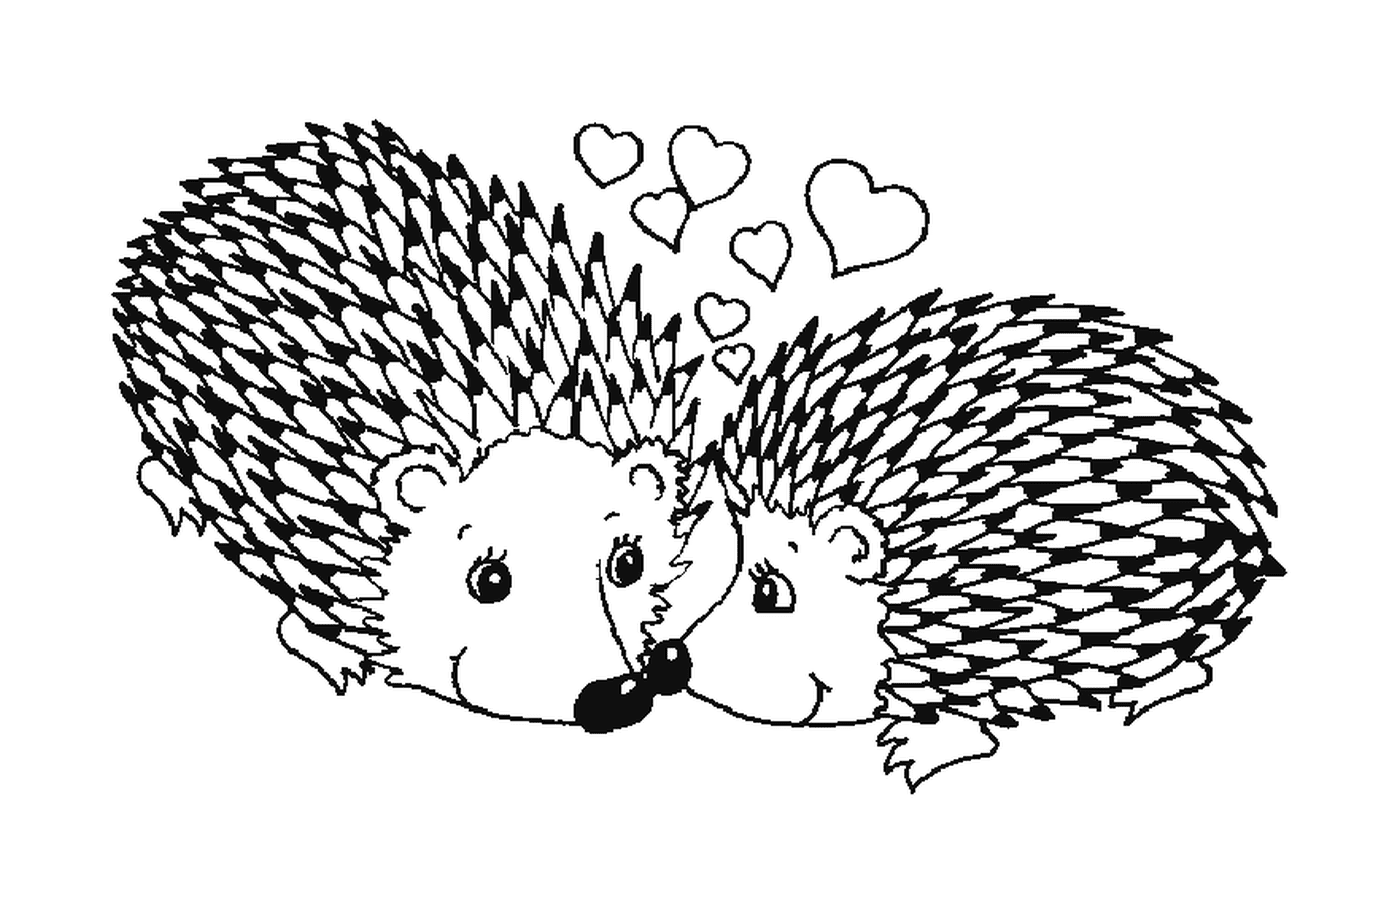  Dois ouriços apaixonados 